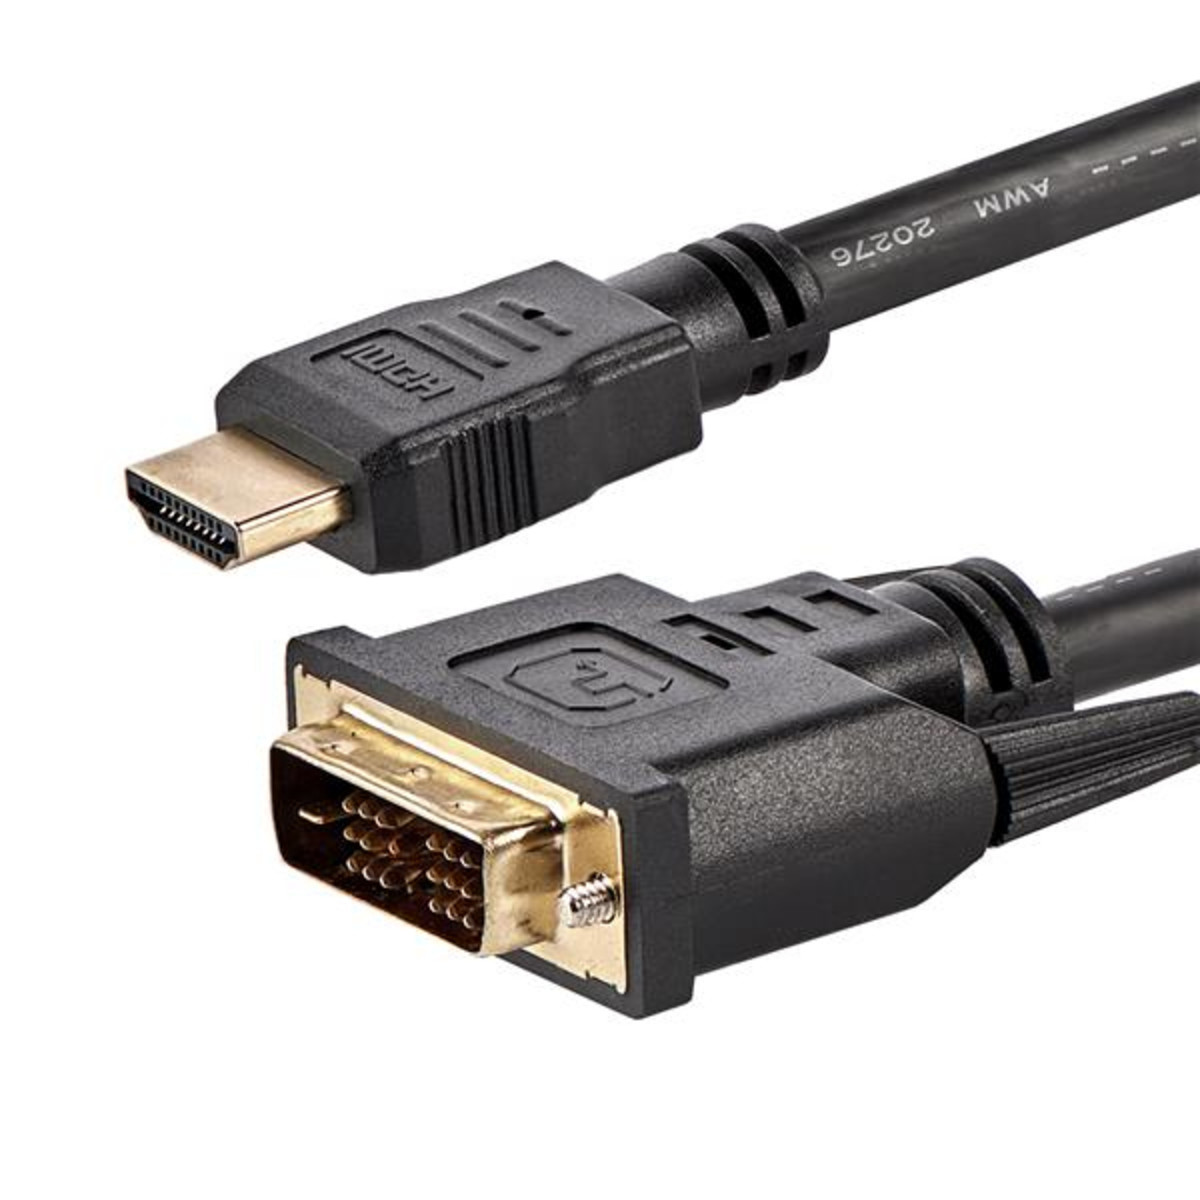 6' HDMI-DVI-D Digital Video Cable